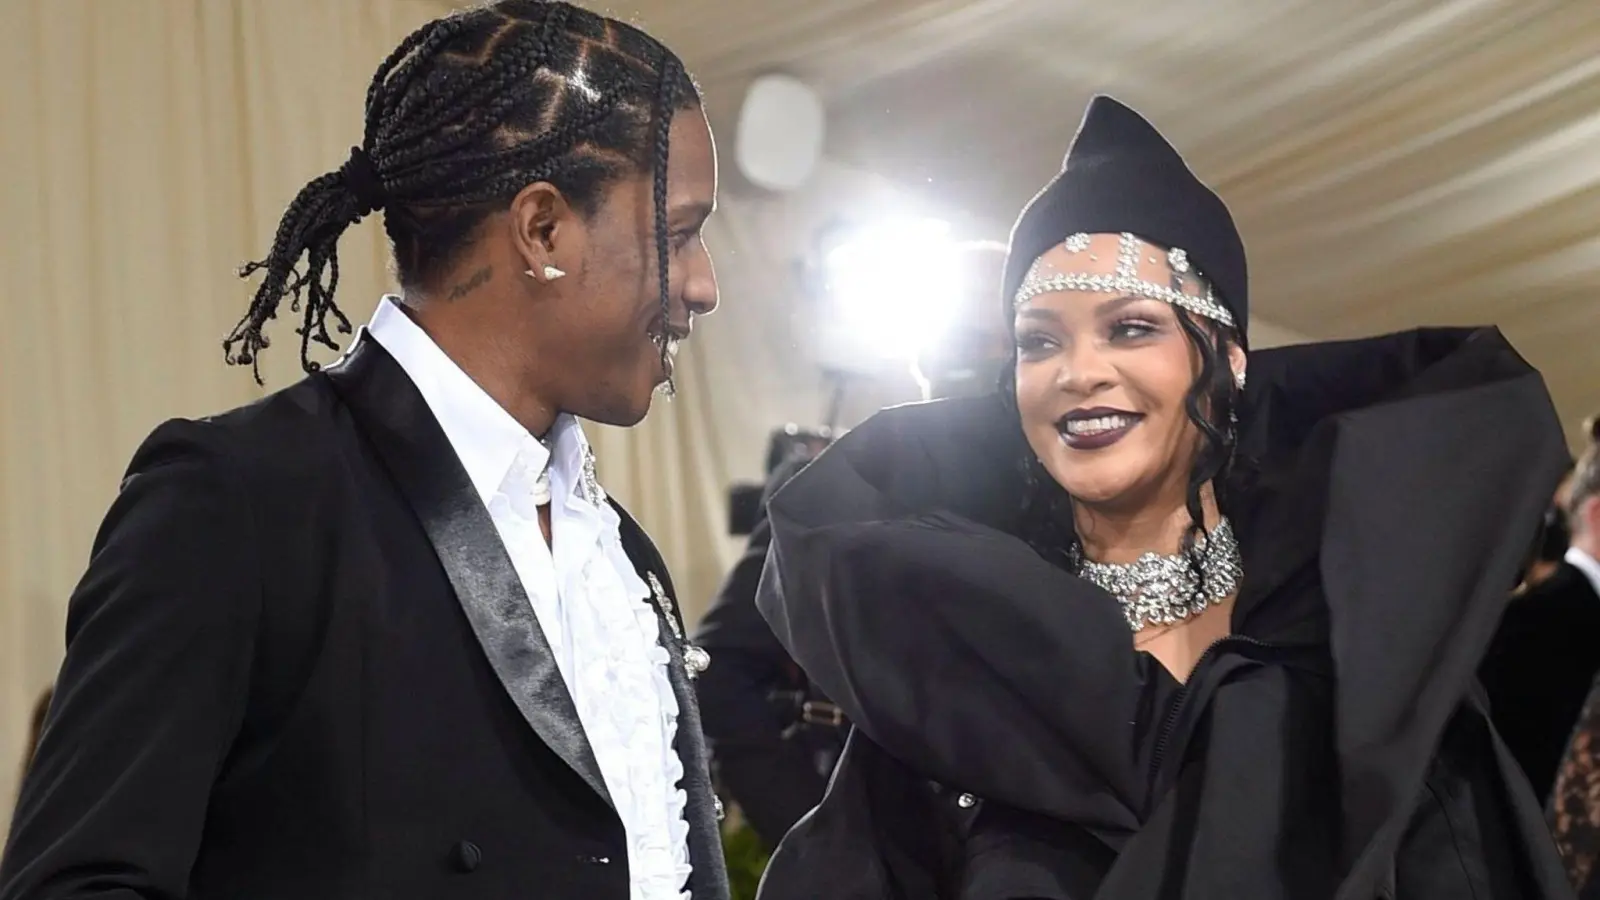 Geübt im großen Auftritt: Im Januar hatten Rihanna und Asap Rocky mit einer Serie von Fotos bekannt gemacht, dass sie ihr erstes gemeinsames Kind erwarten. (Foto: Evan Agostini/Invision via AP/dpa)